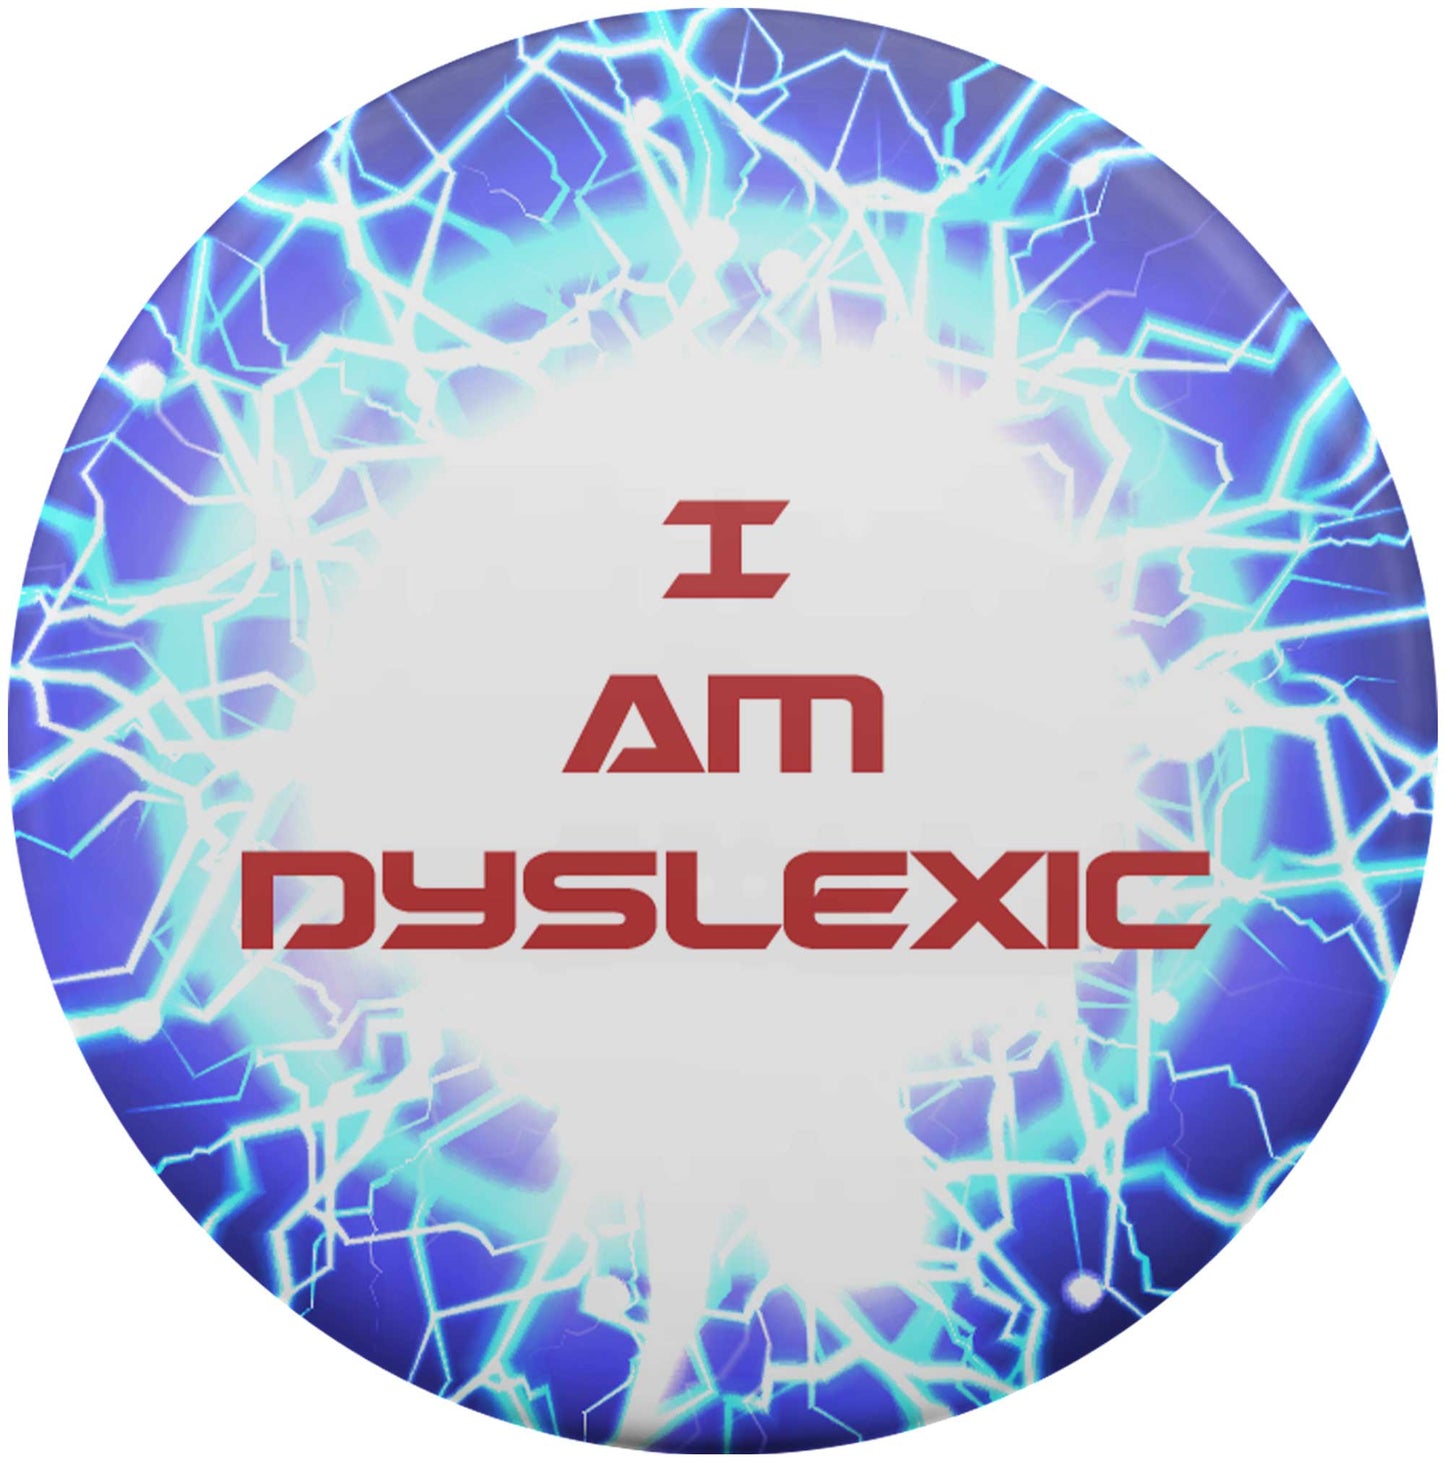 I Am Dyslexic